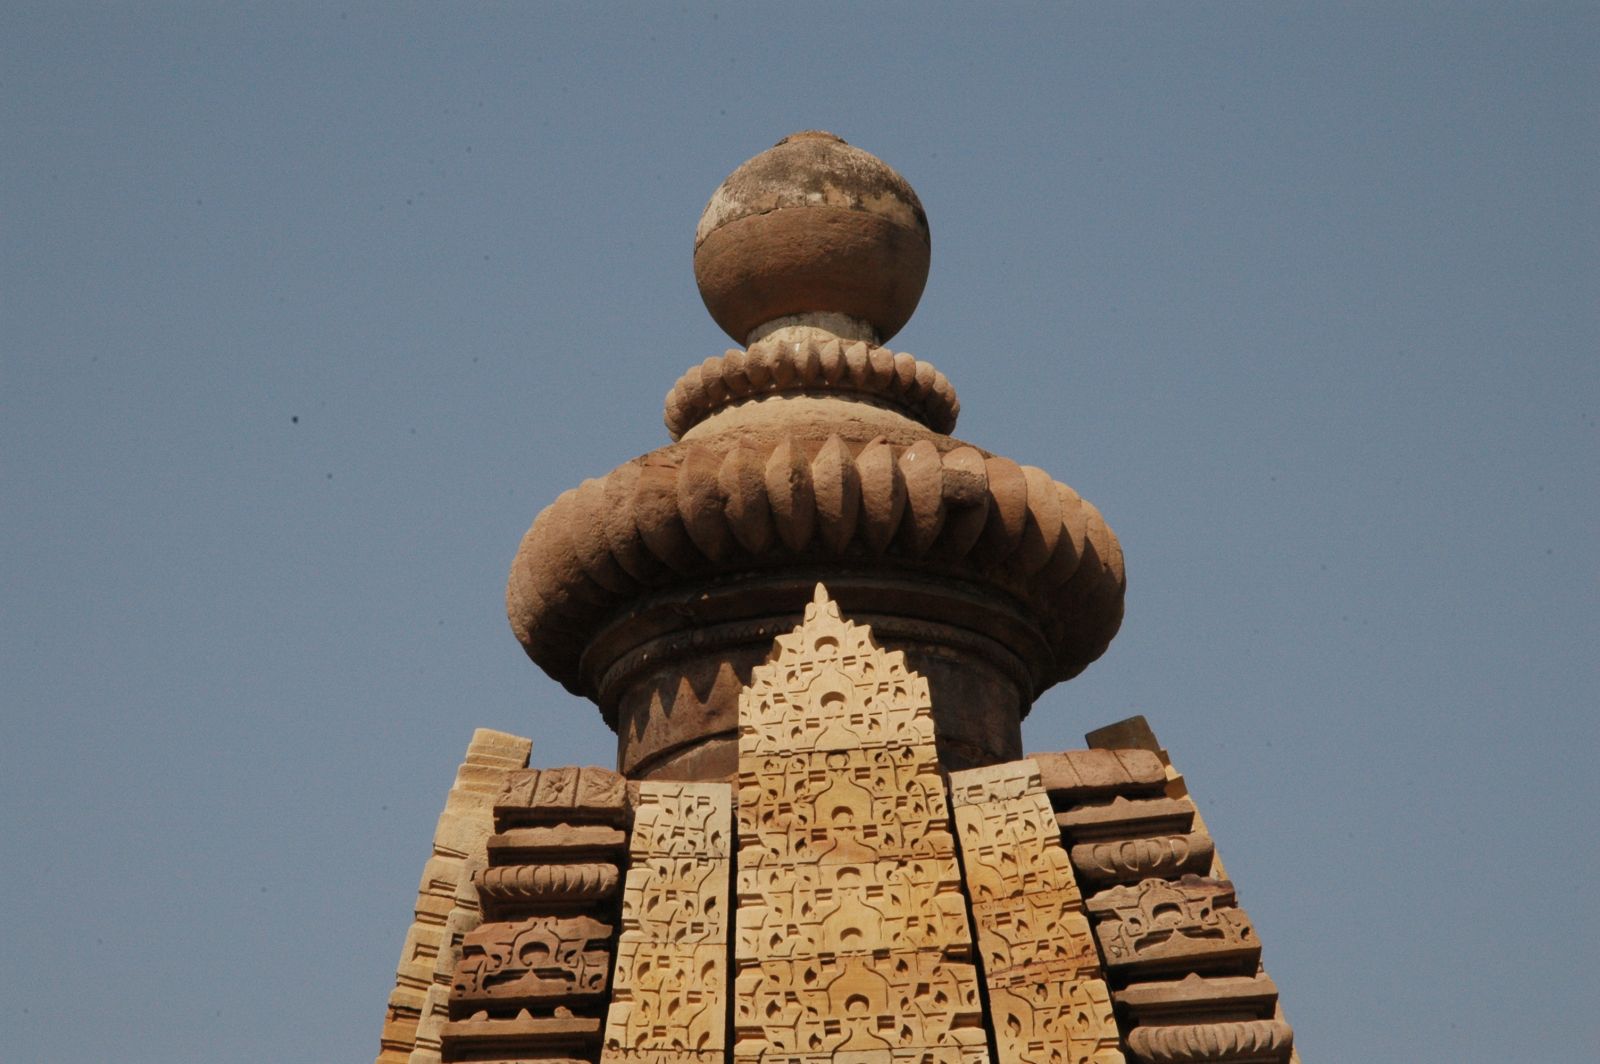 梵語翻譯字面上「山峰」。是指北印度的印度教寺廟中央神的神殿上塔的造型。錫哈拉之下最神聖的地方（sanctorum）裡供奉主神，錫哈拉造型突出，也等同印度教寺廟的標記。在南印度部稱為唯瑪納（宮殿vimana